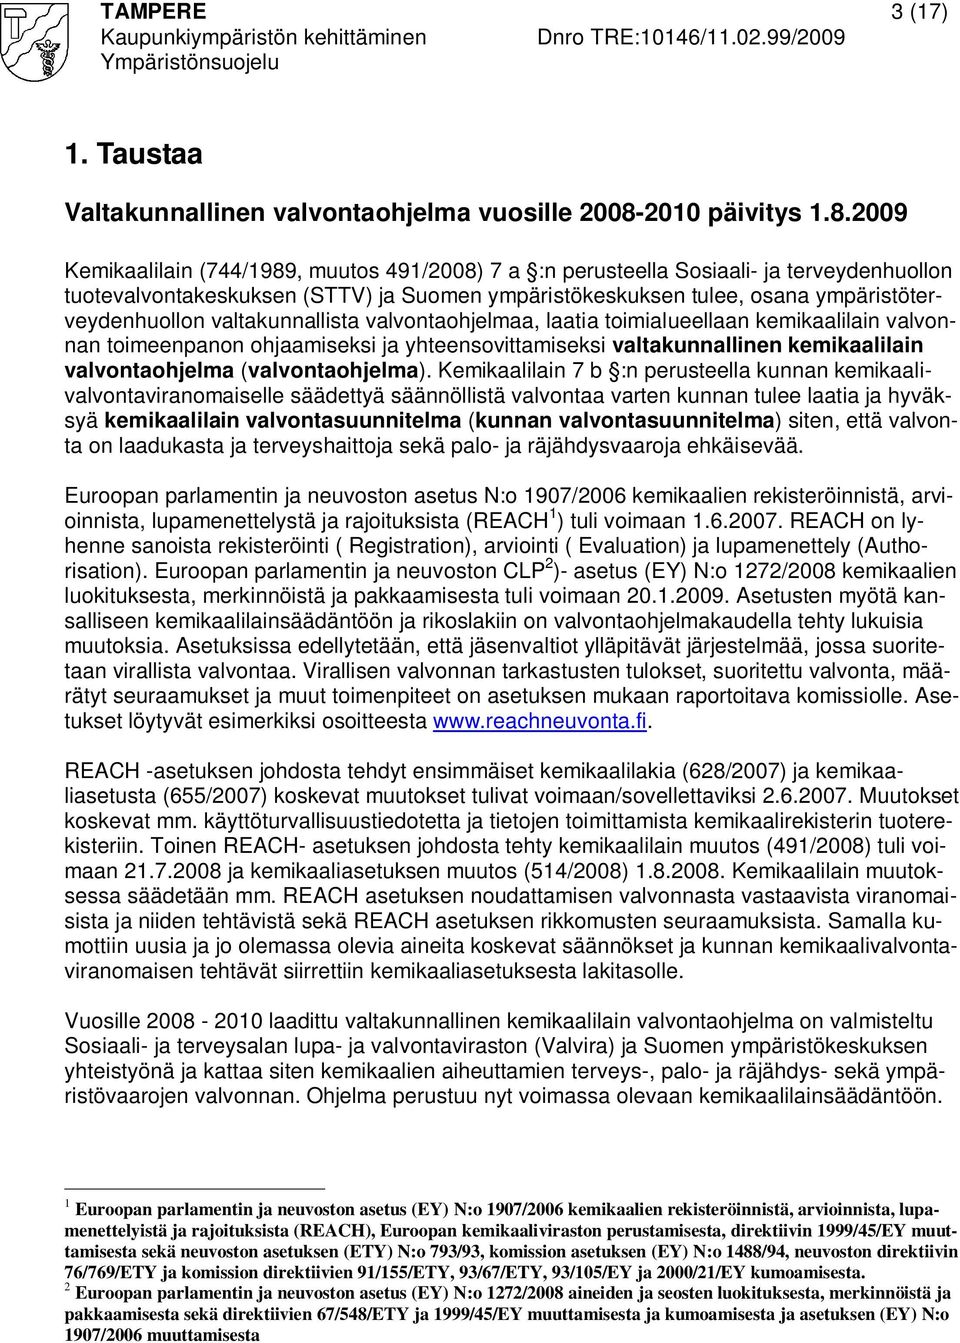 2009 Kemikaalilain (744/1989, muutos 491/2008) 7 a :n perusteella Sosiaali- ja terveydenhuollon tuotevalvontakeskuksen (STTV) ja Suomen ympäristökeskuksen tulee, osana ympäristöterveydenhuollon